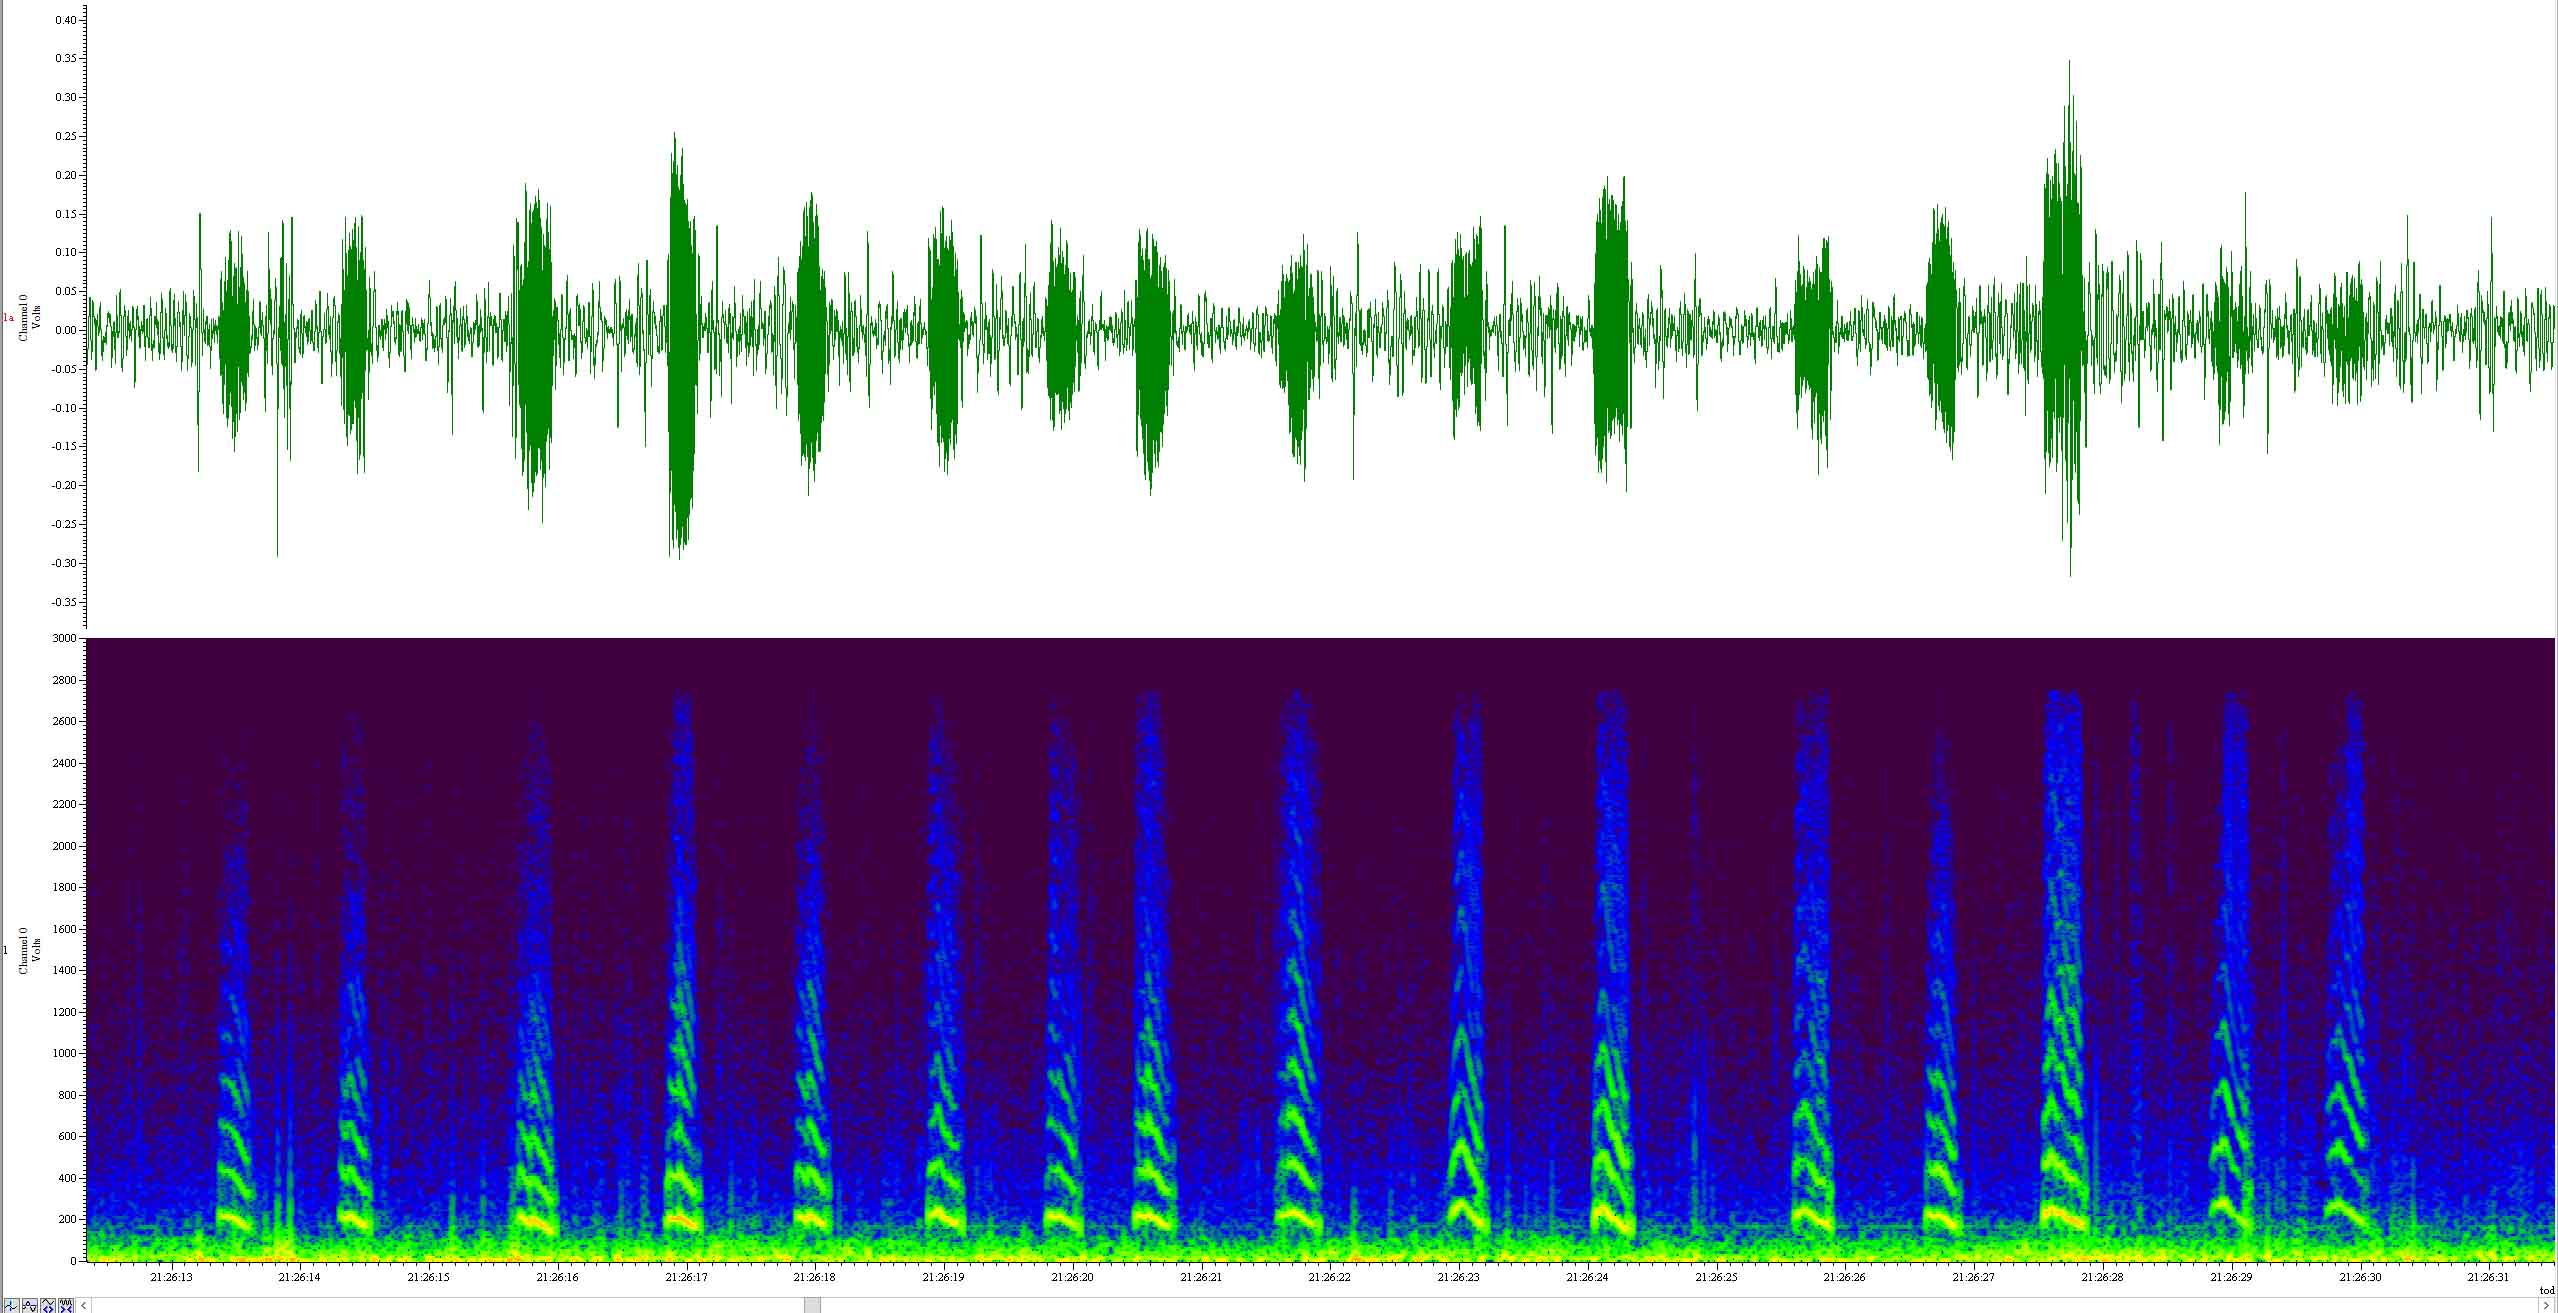  beep tones ESF signal trace + sonogram 